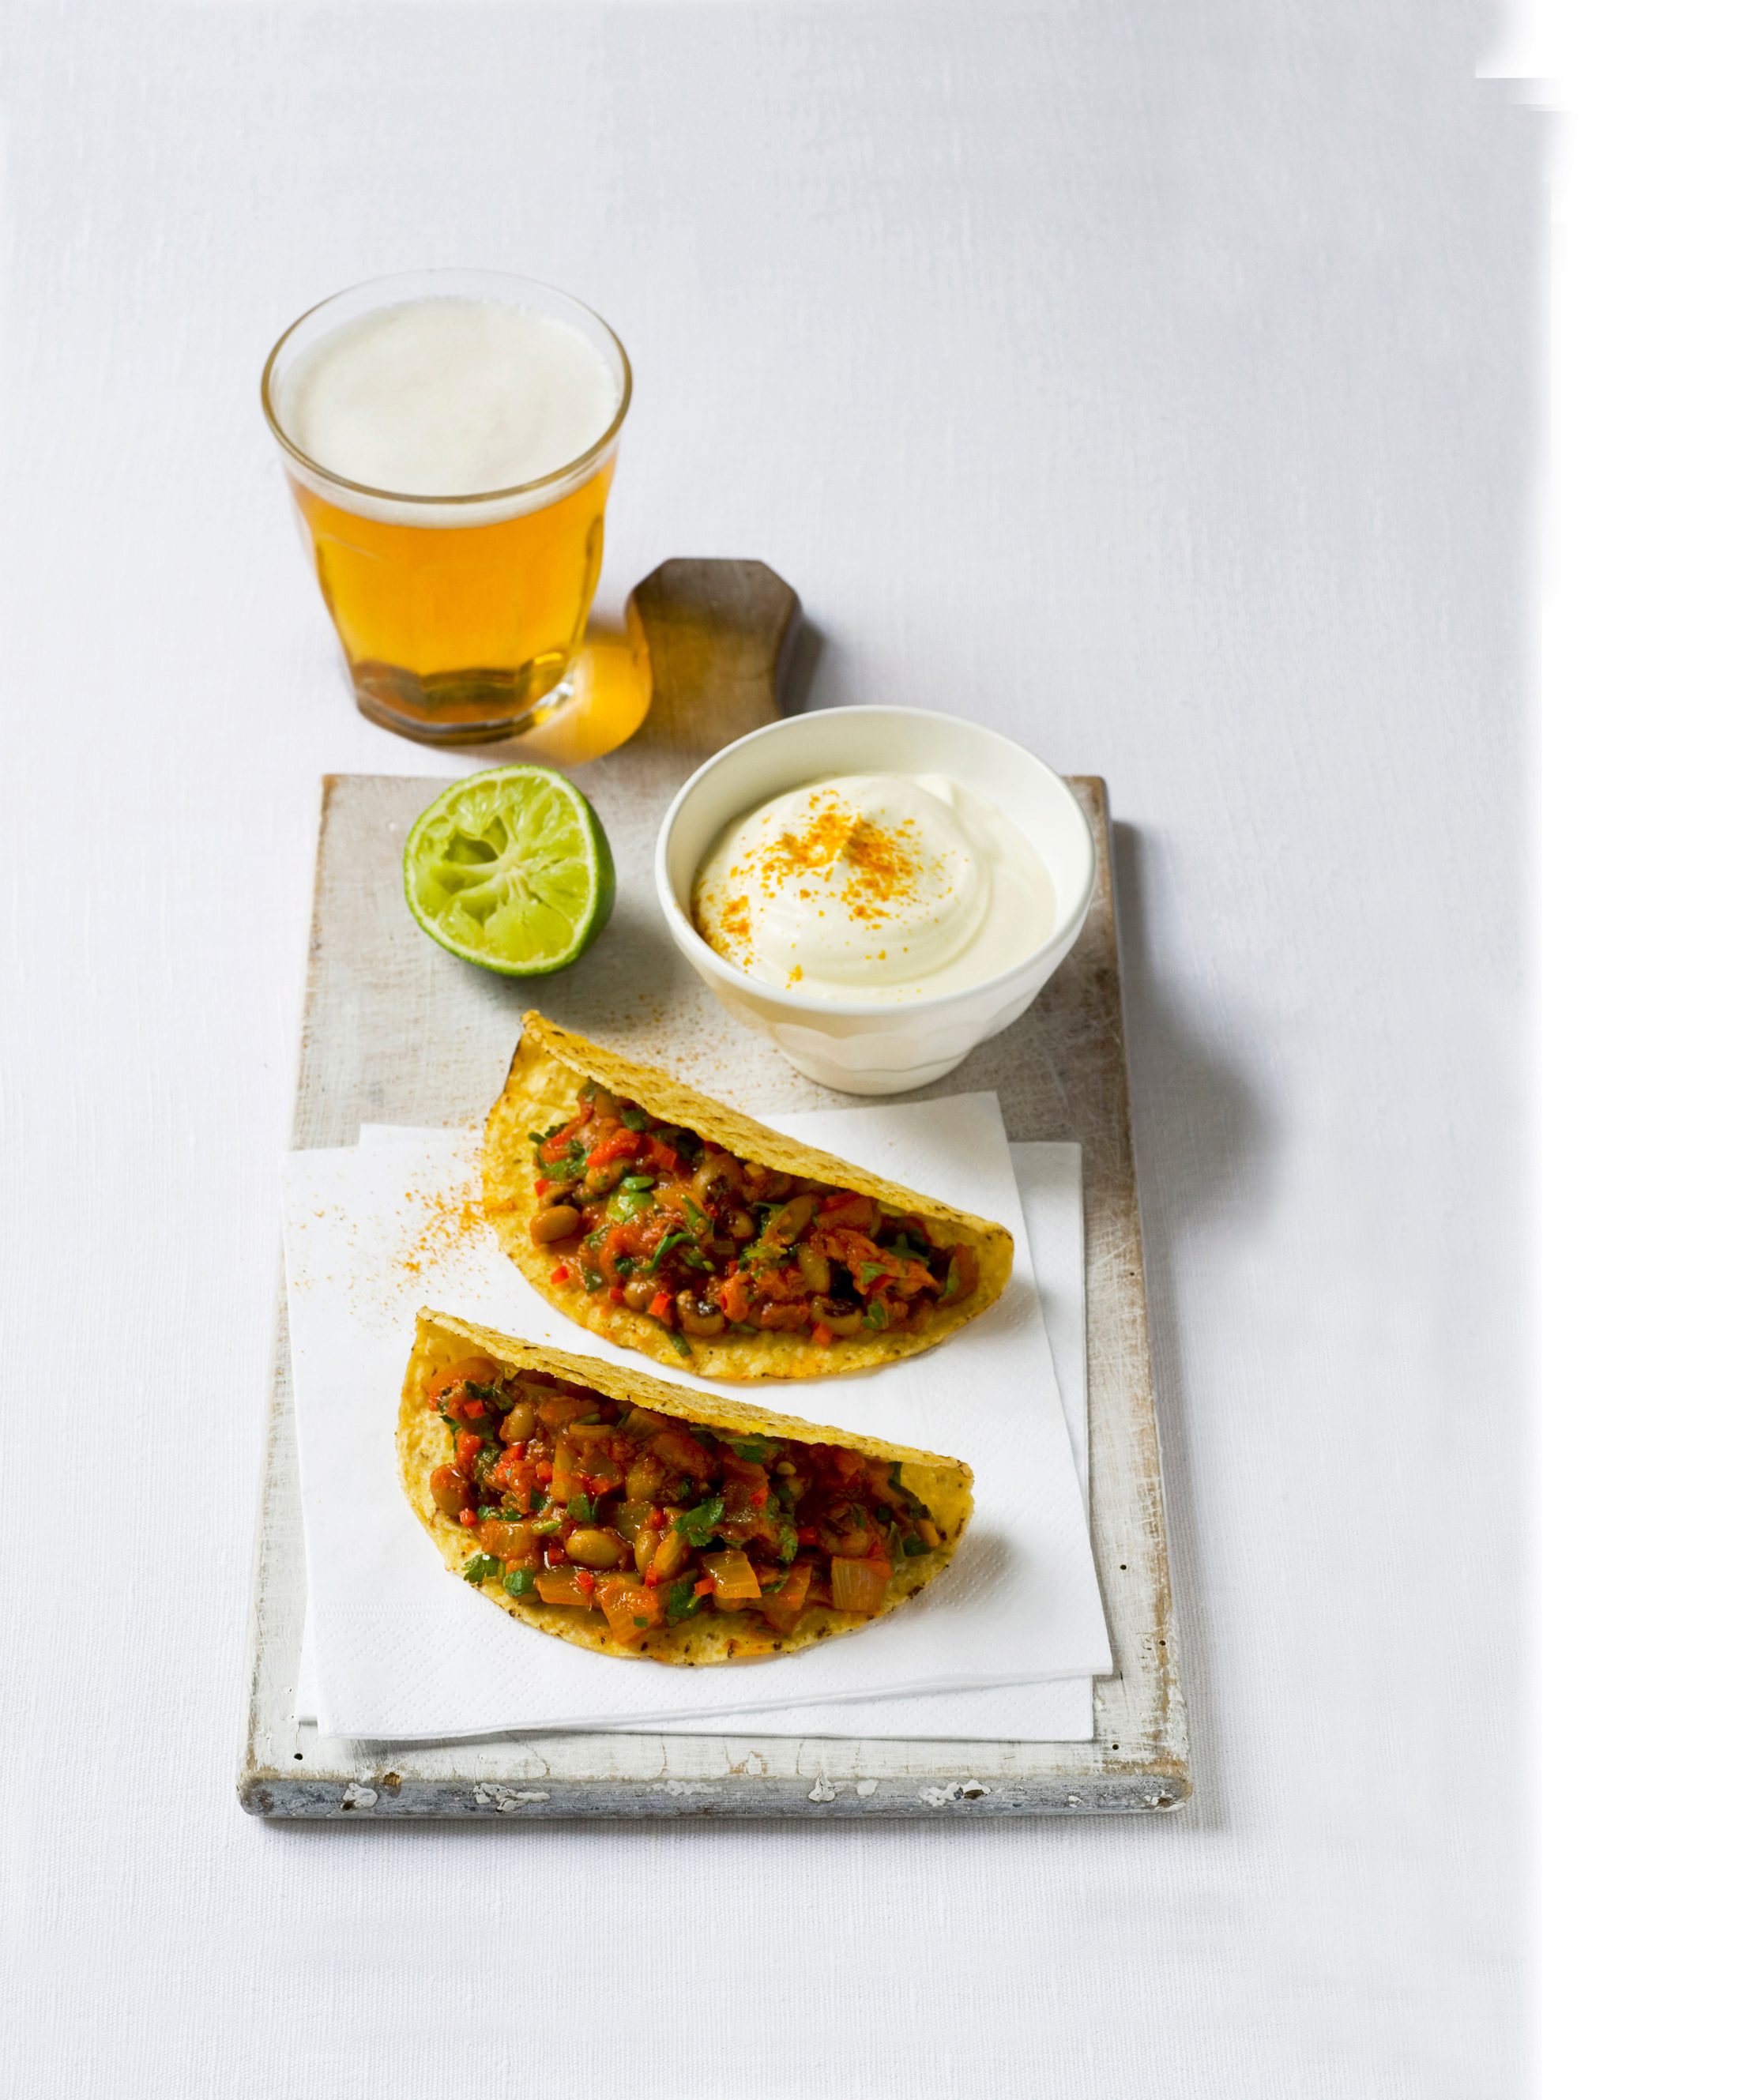 Tacos cu ardei iute, o oală de smântână și felie de lime pe o placă albă